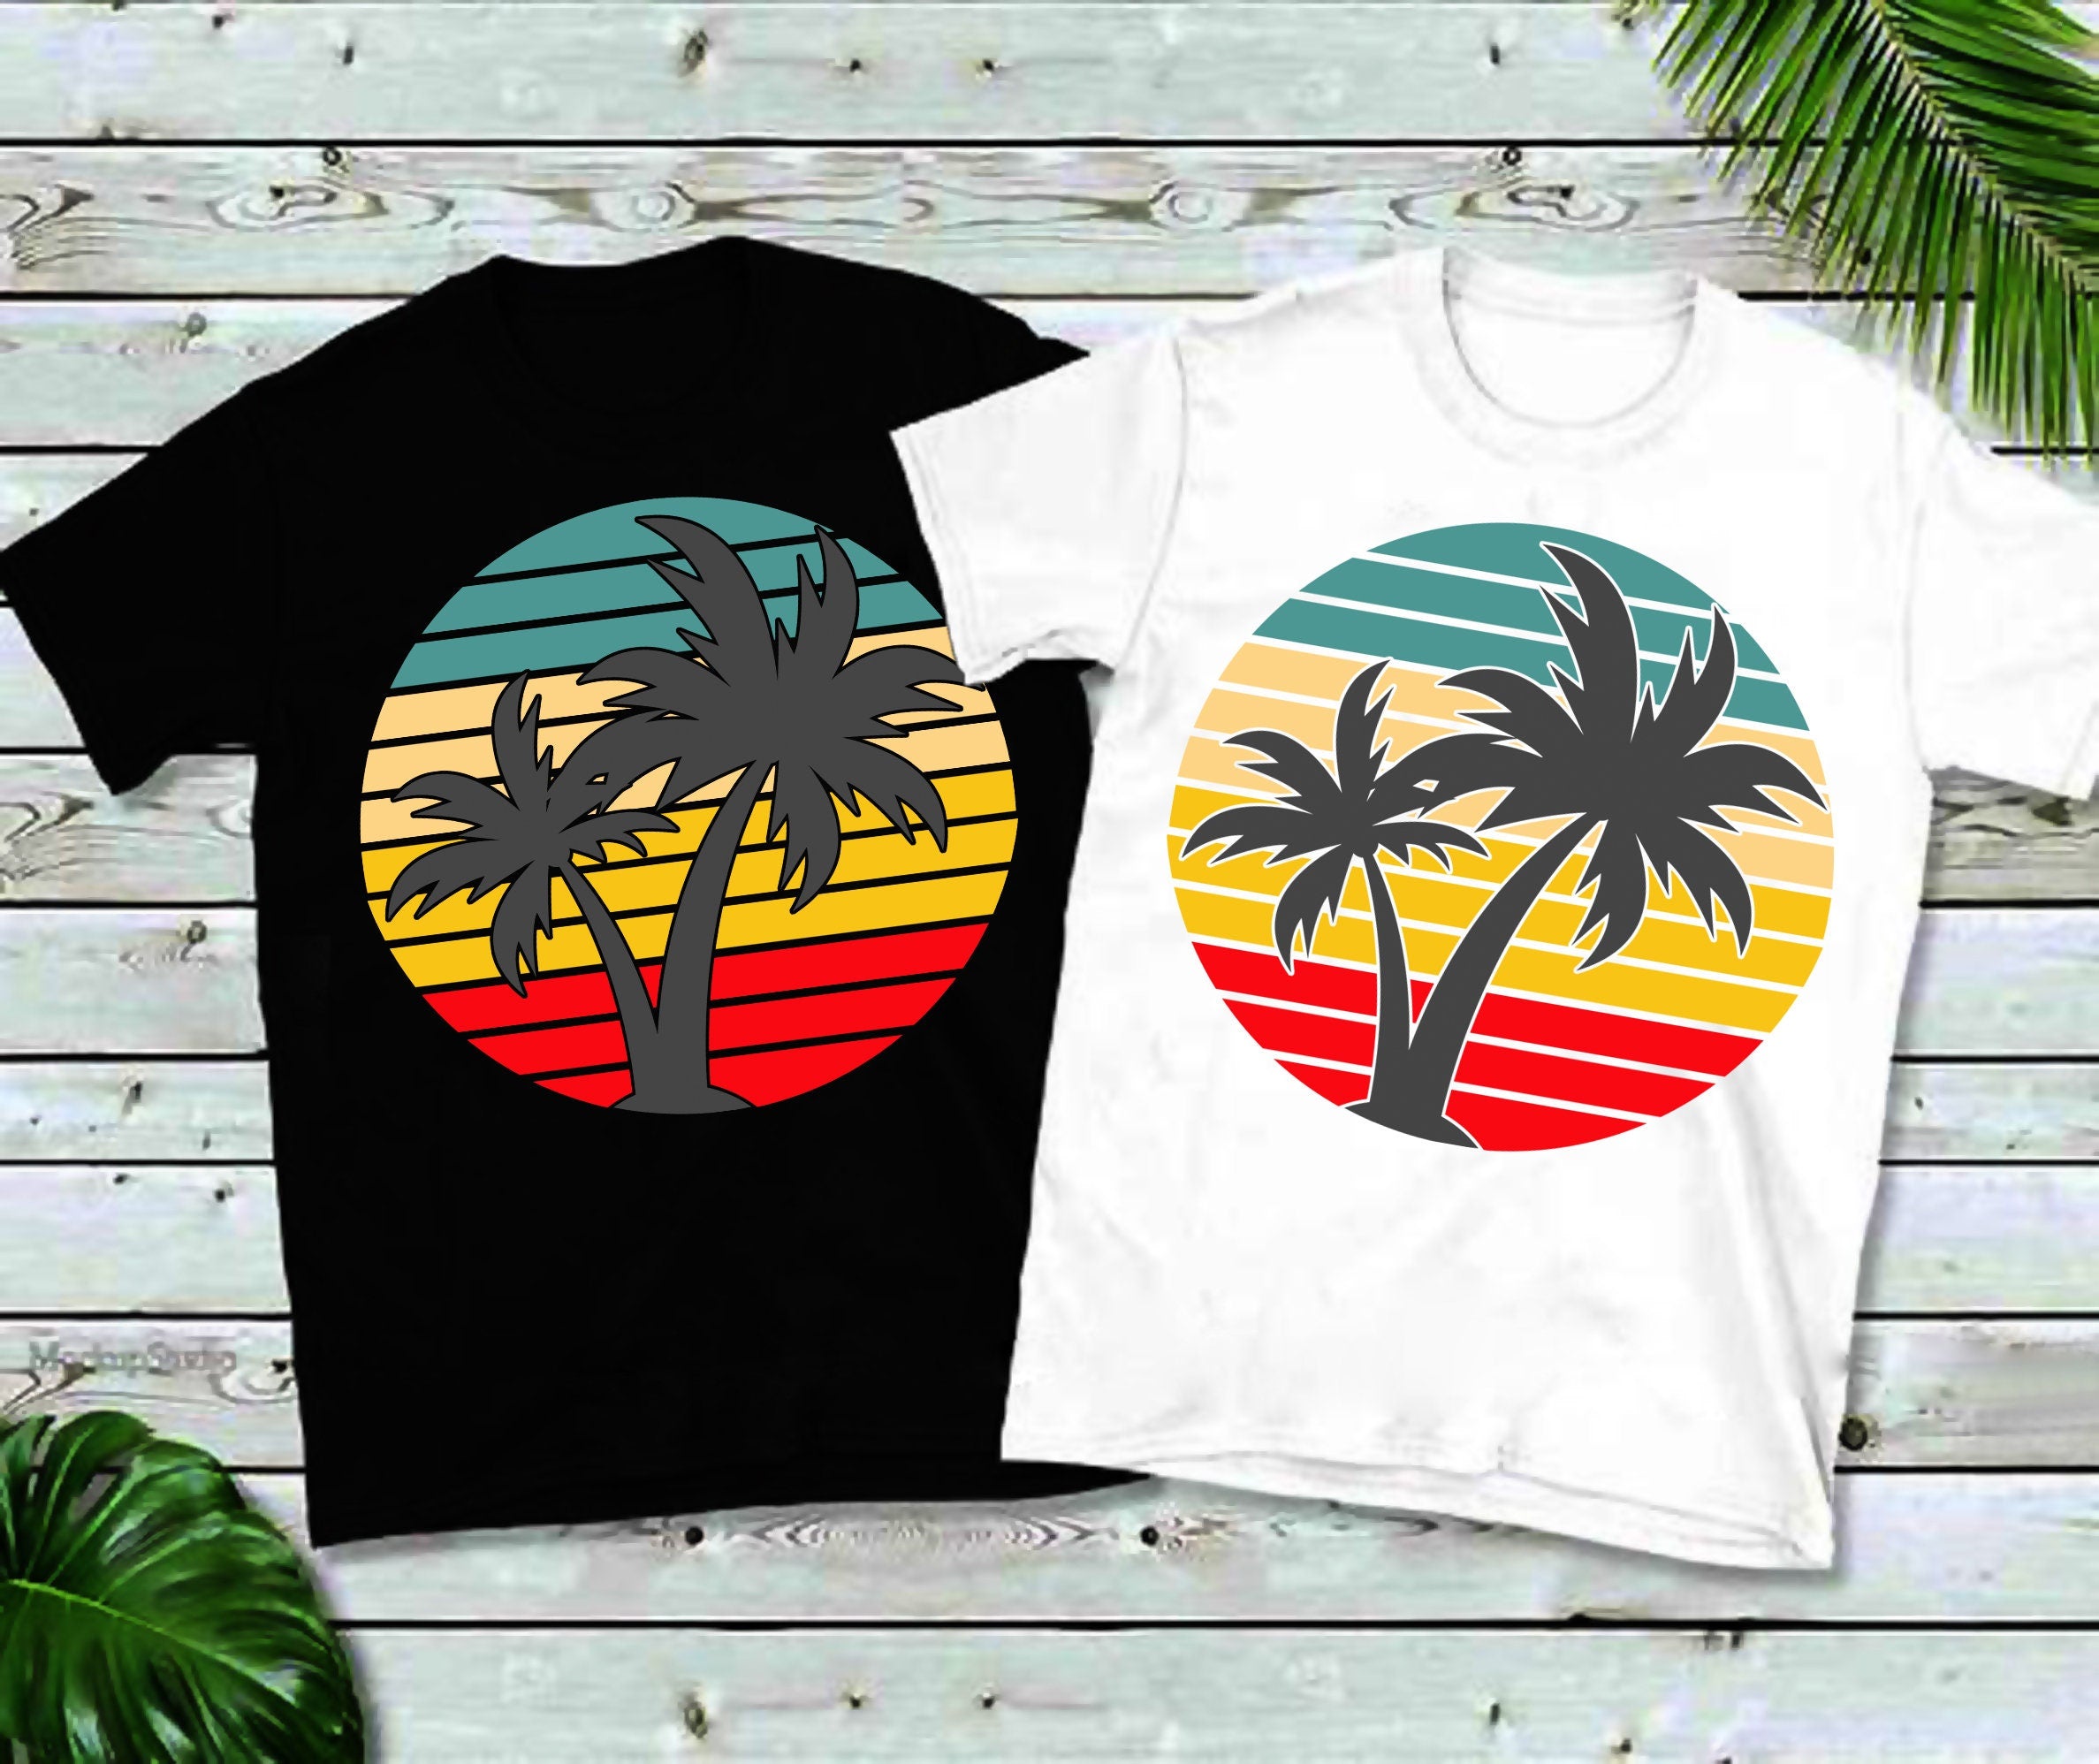 उष्णकटिबंधीय सूर्यास्त यूनिसेक्स शर्ट || समुद्र तट उष्णकटिबंधीय सूर्यास्त शर्ट || उष्णकटिबंधीय अवकाश शर्ट || विंटेज समर टी शिर - प्लसमिनस्को.कॉम